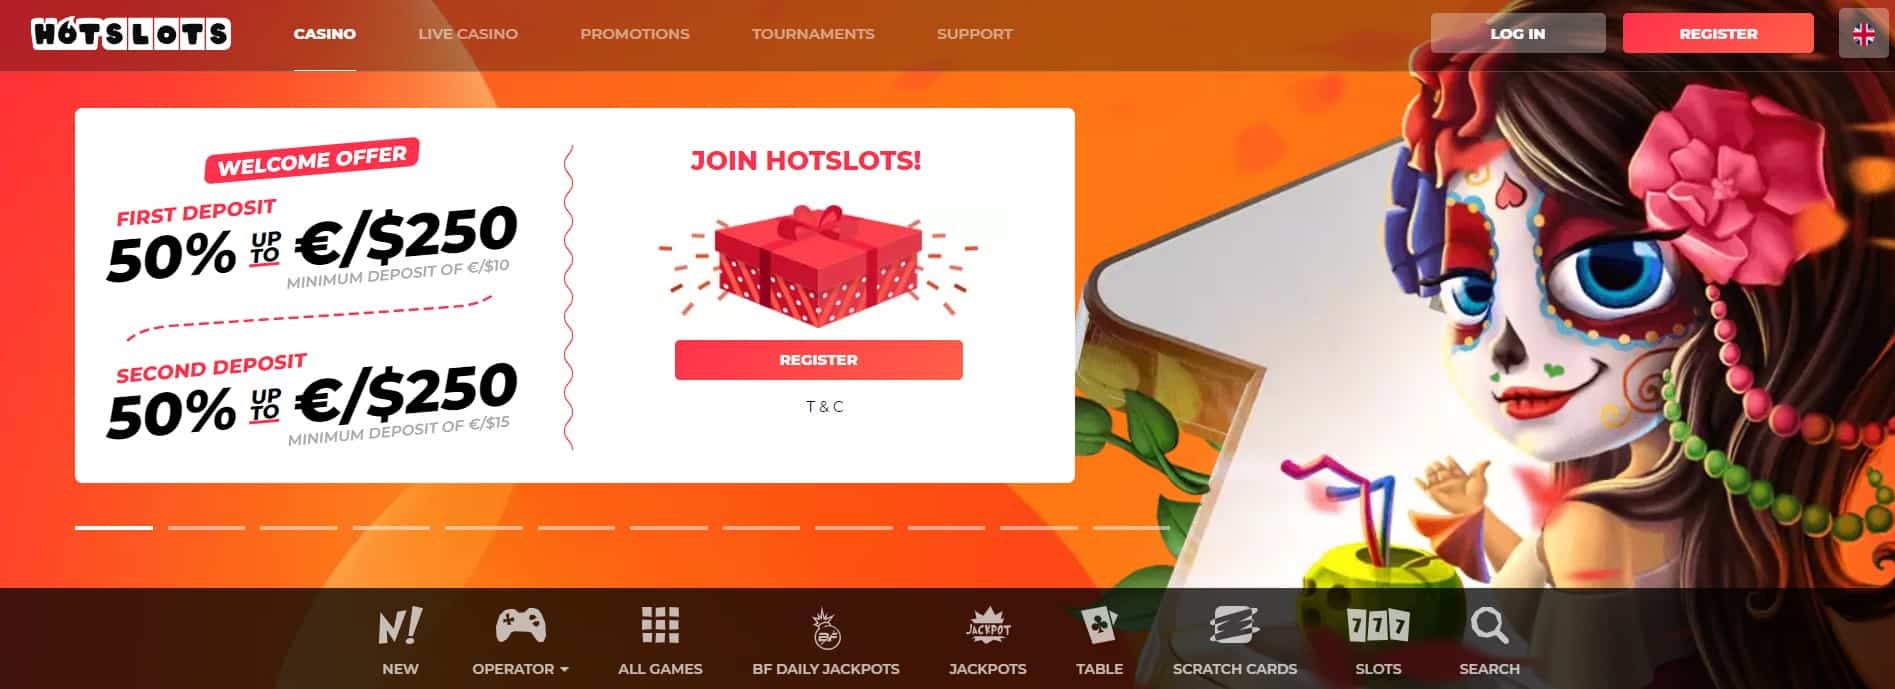 hotslots casino main page